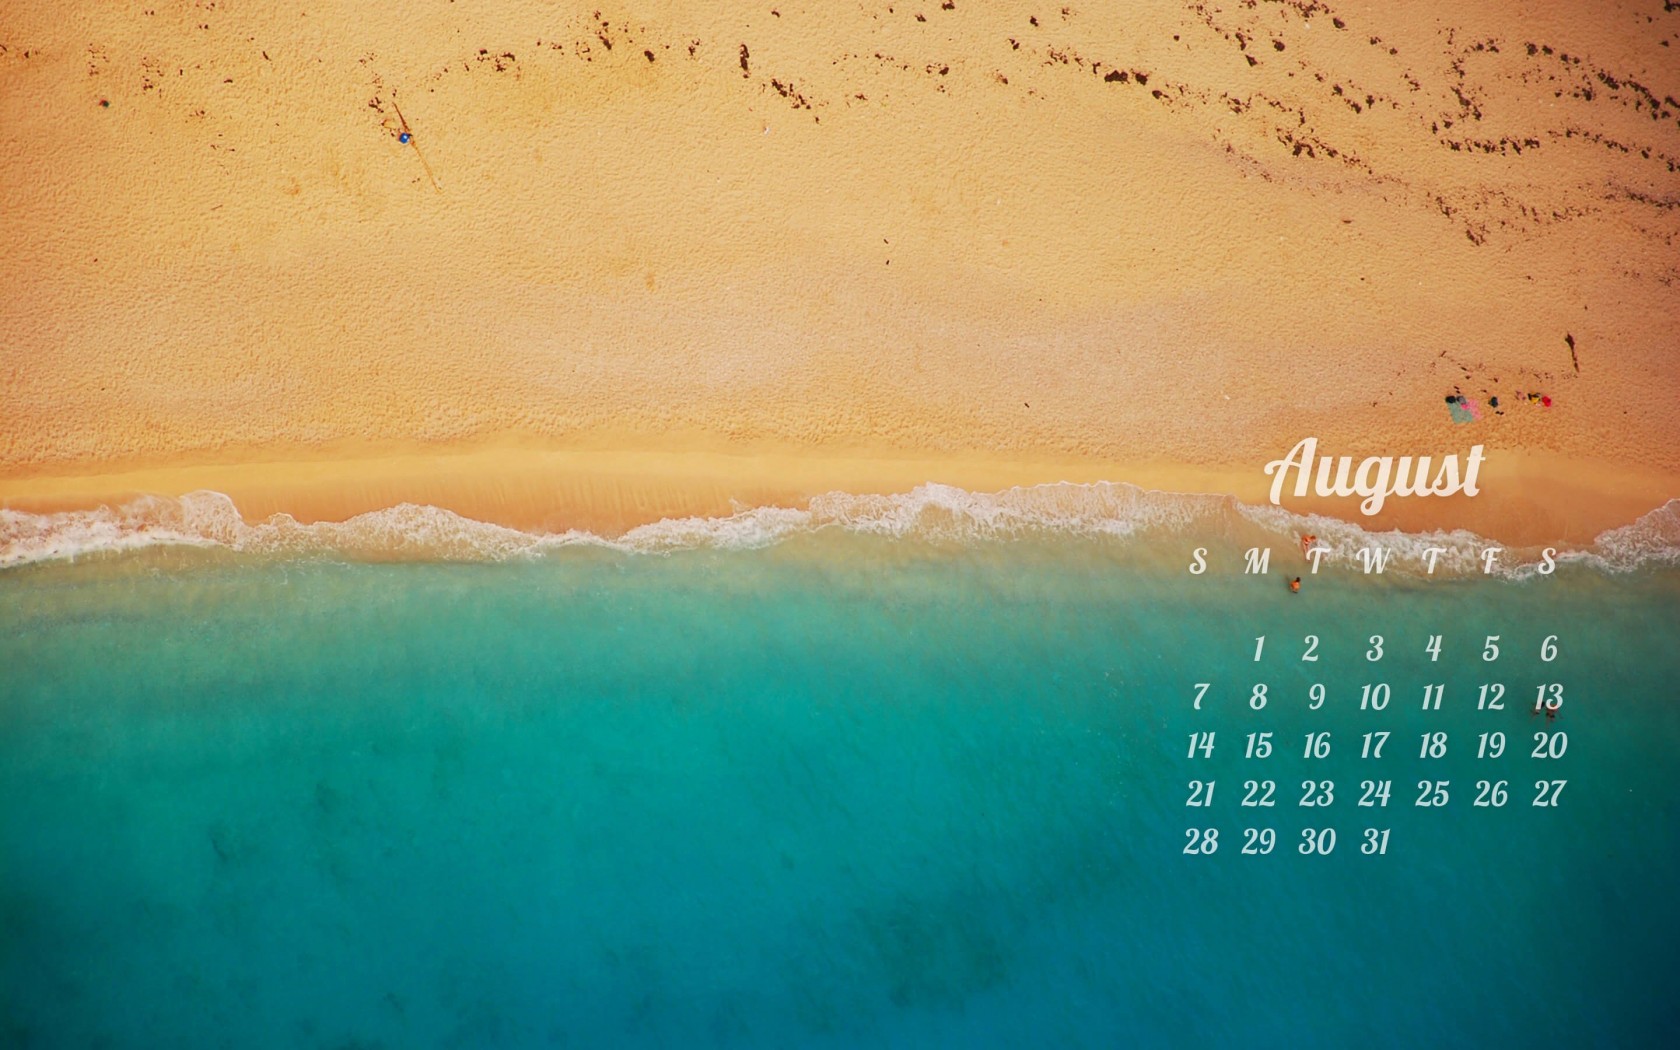 August 2016 Calendar Wallpaper for Desktop 1680x1050